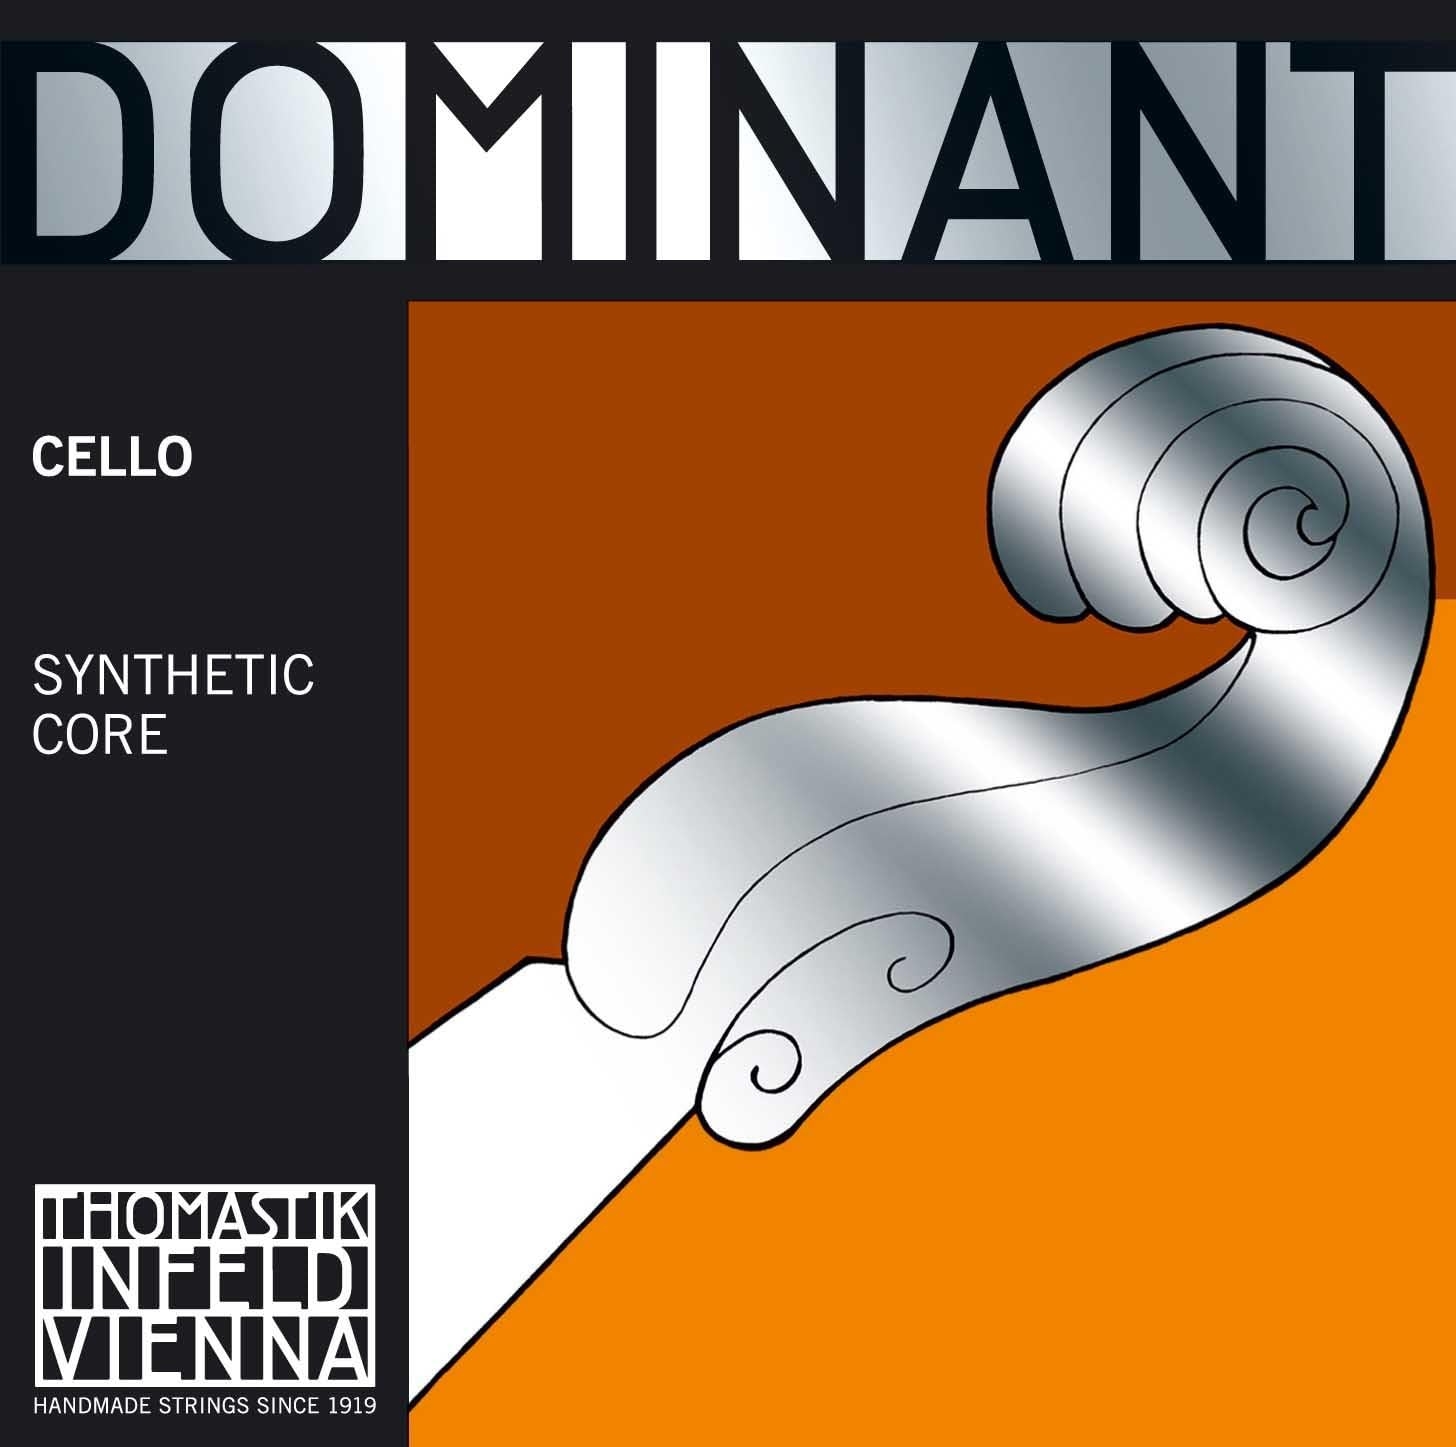 Thomastik-Infeld 145st – Cuerda de violonchelo dominante, cuerda en C individual, herida de cromesteel, tensión Stark (pesada),